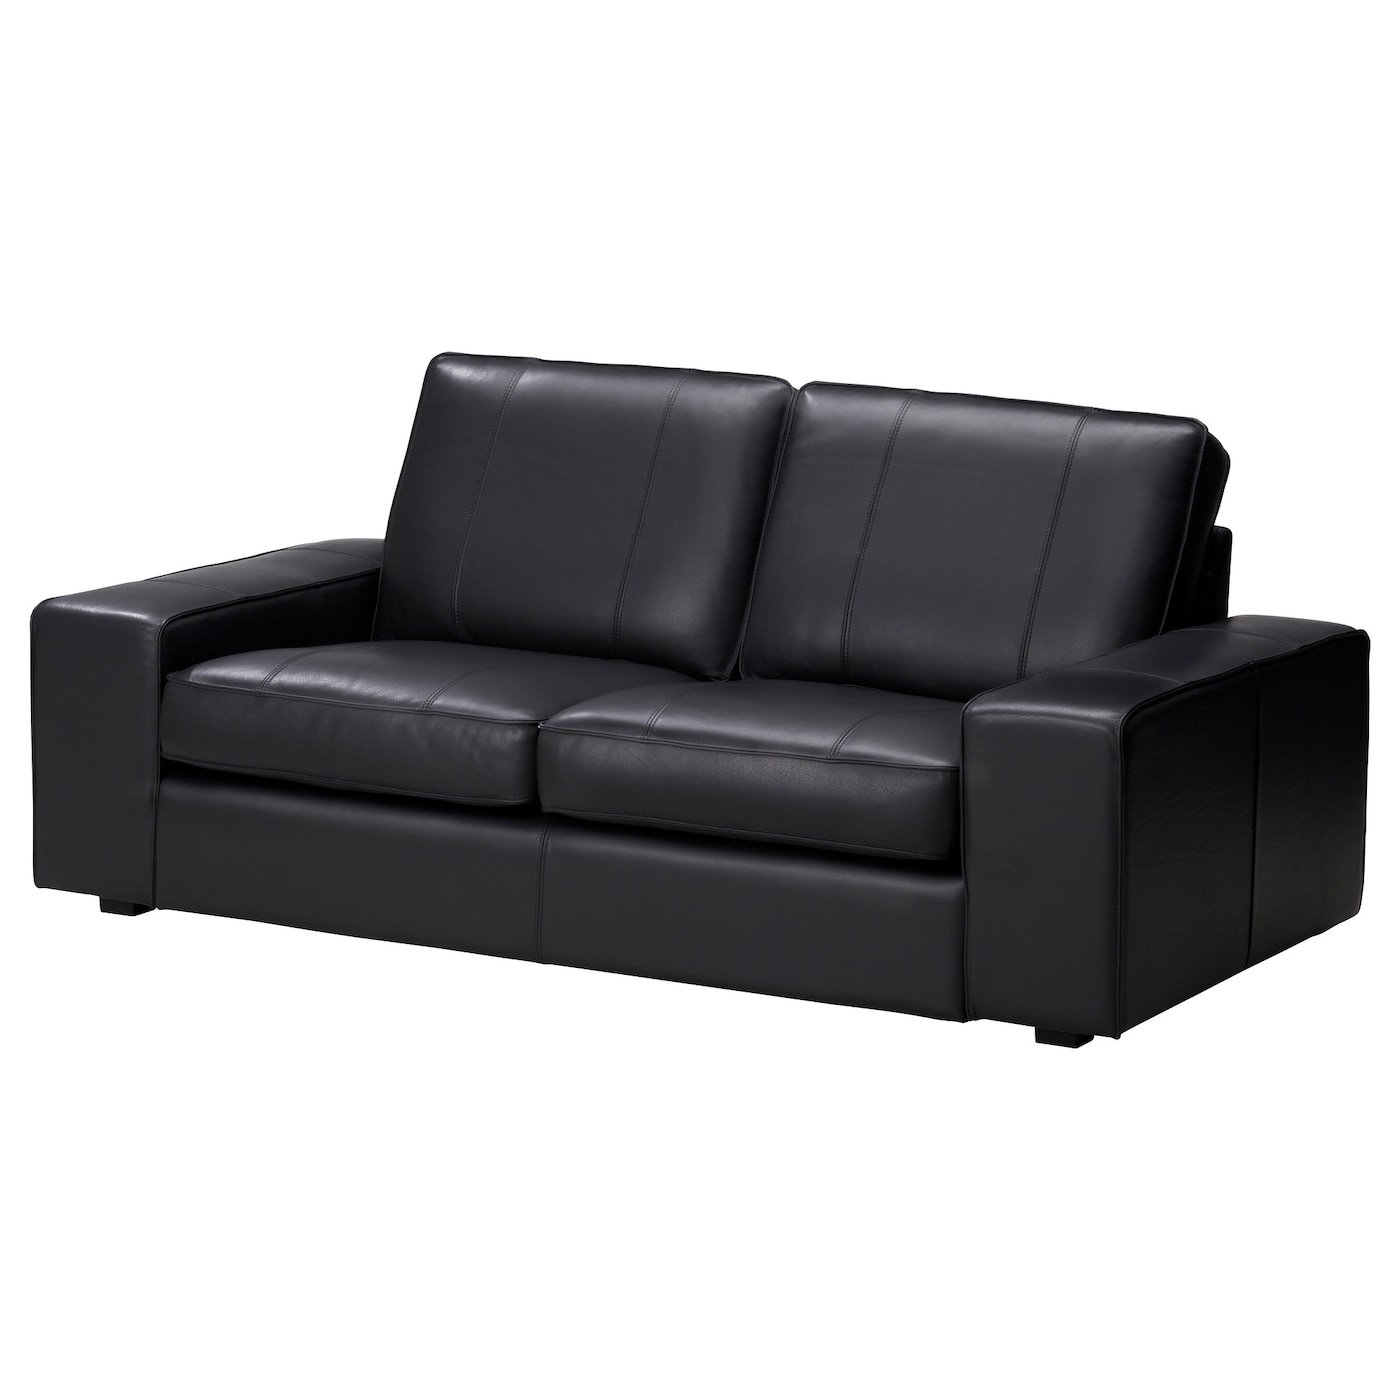 2-местный диван - IKEA KIVIK, 190х95х83 см, черный, кожа, КИВИК ИКЕА